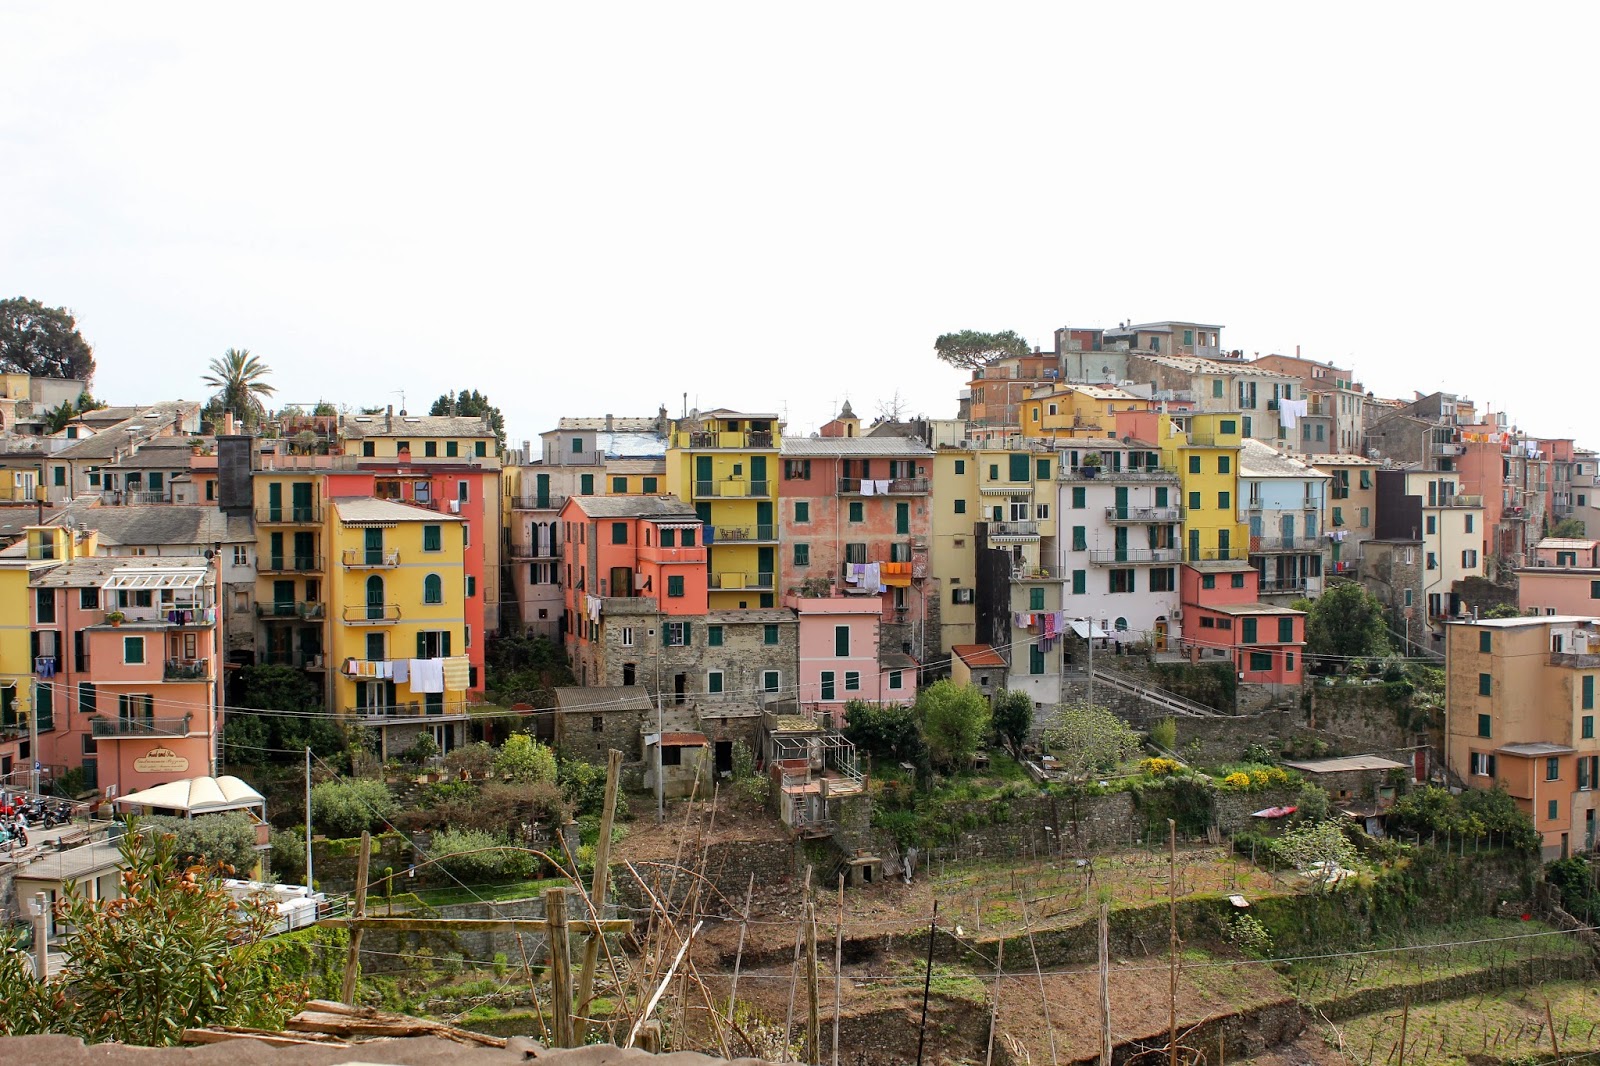 Corniglia in the Cinque Terre